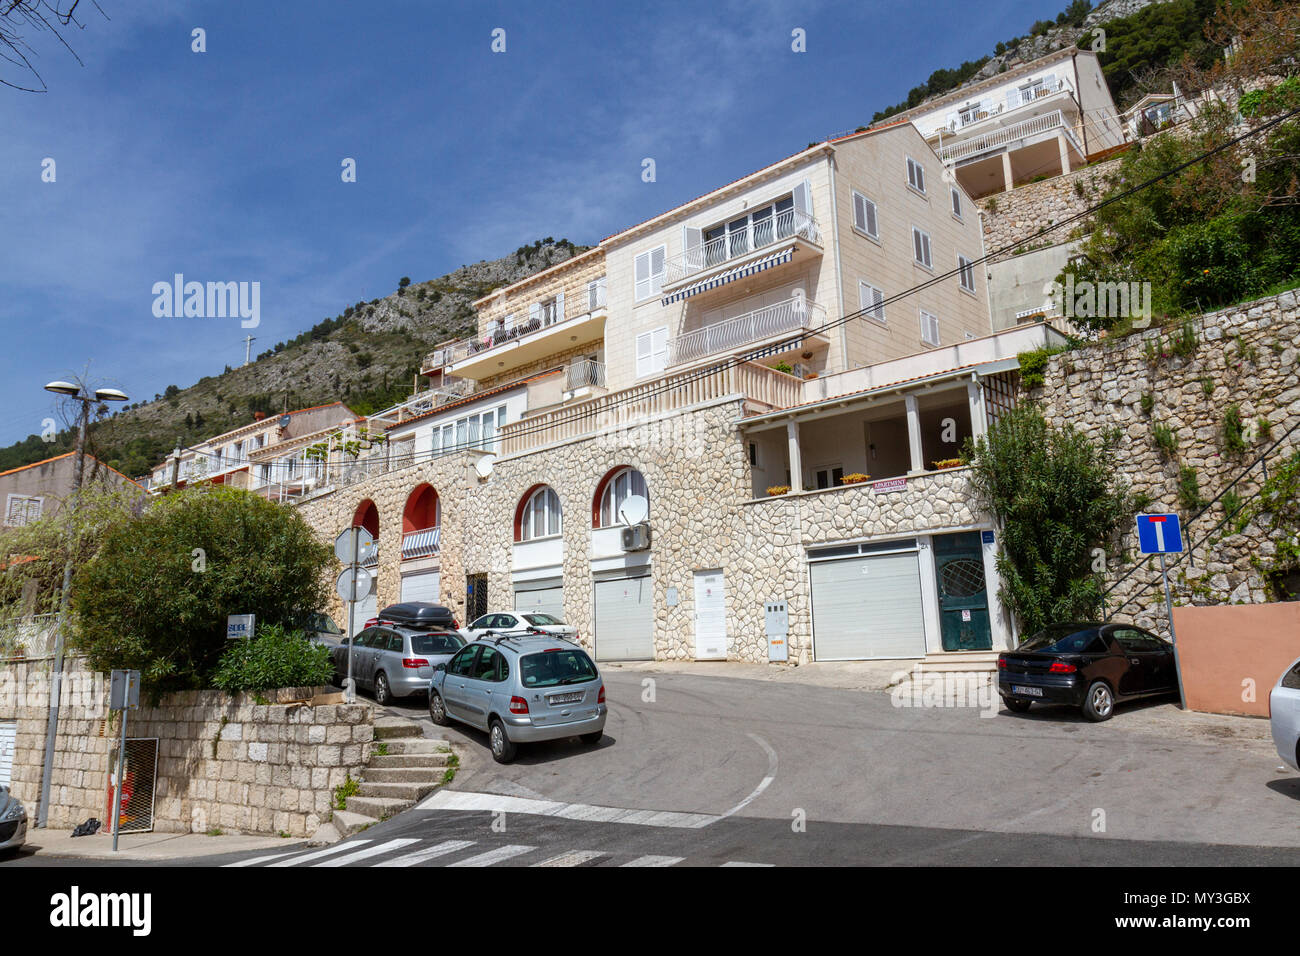 Propriétés typiques de l'escalade à l'est de la vieille ville de Dubrovnik, Croatie. Banque D'Images